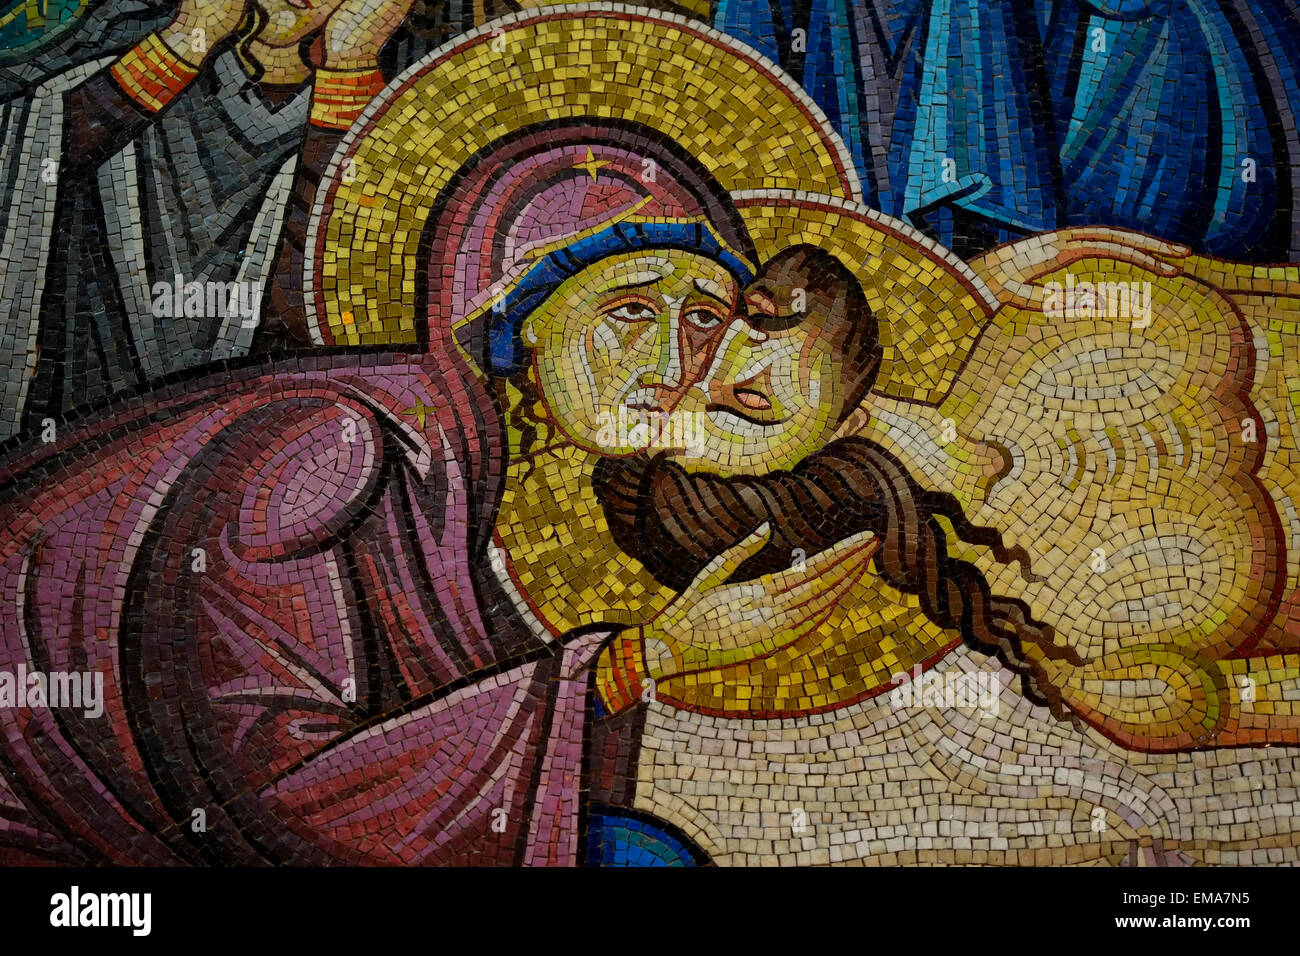 Extrait d'une mosaïque murale représentant le corps de Jésus Christ préparé après sa mort, face à la Pierre d'onction à l'intérieur de l'Église du Saint-Sépulcre dans la vieille ville chrétienne Jérusalem-est Israël Banque D'Images